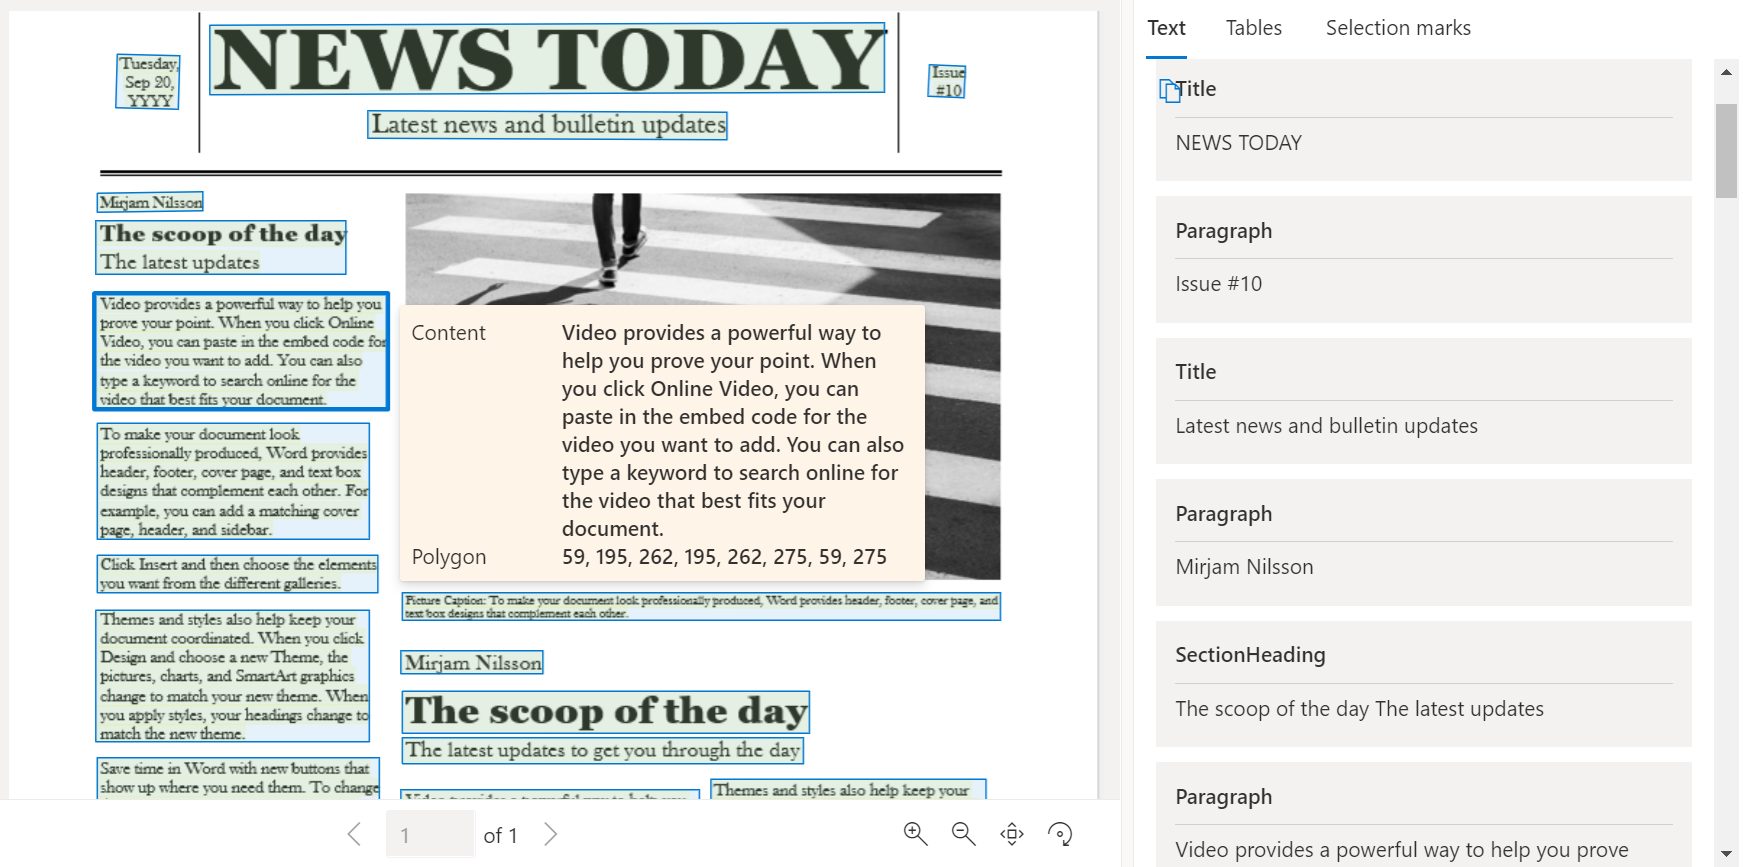 Captura de tela da página de exemplo de jornal processada usando o Estúdio de Informação de Documentos.